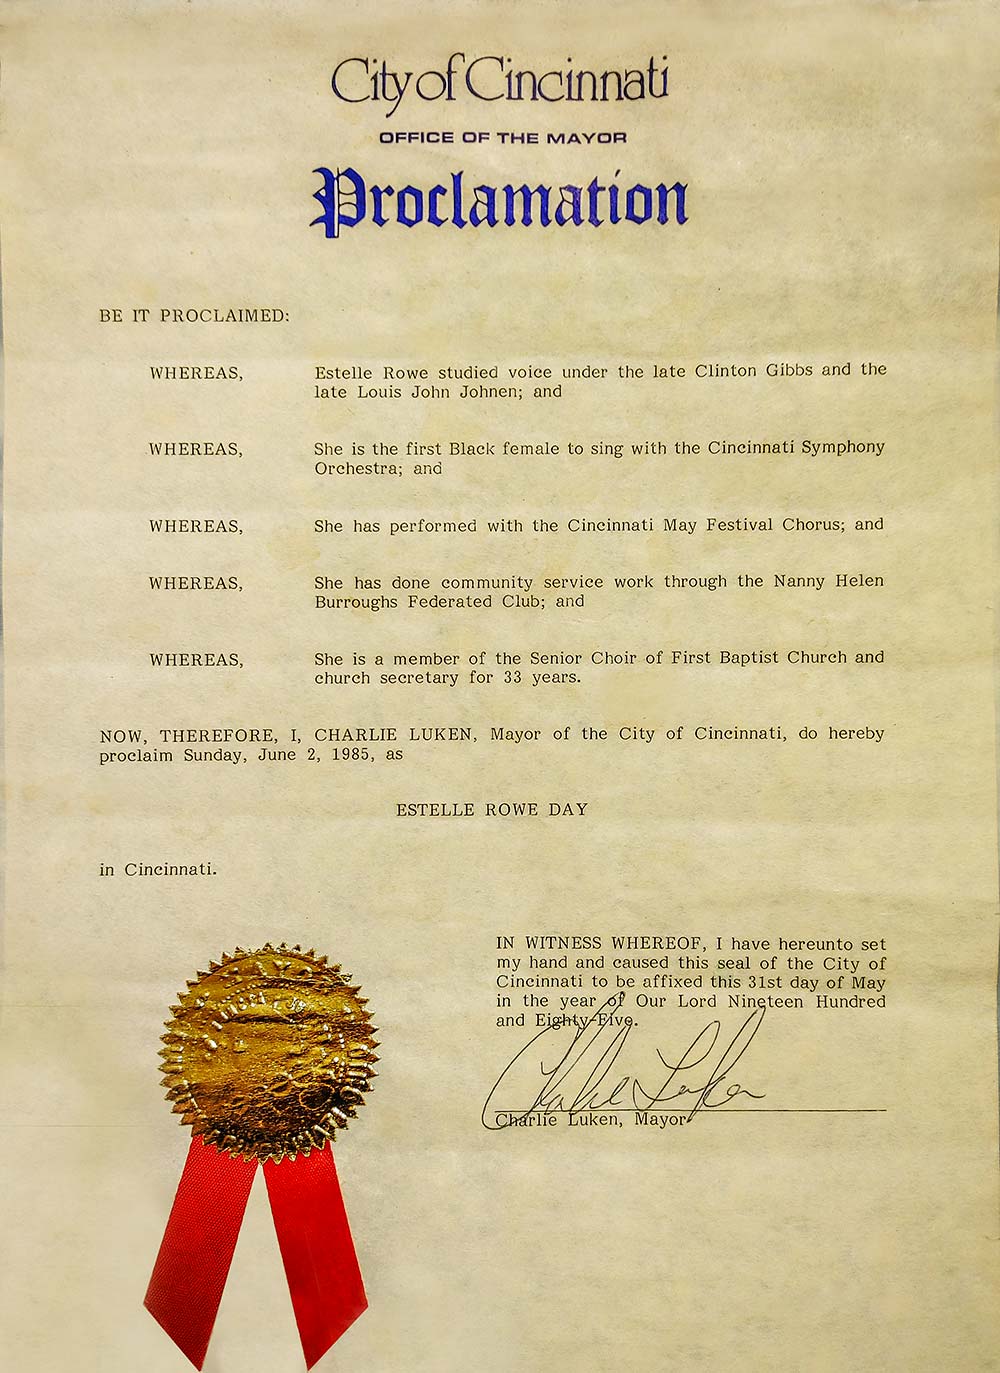 Proclamation by Mayor Luken for Estella Rowe Day, June 2, 1985